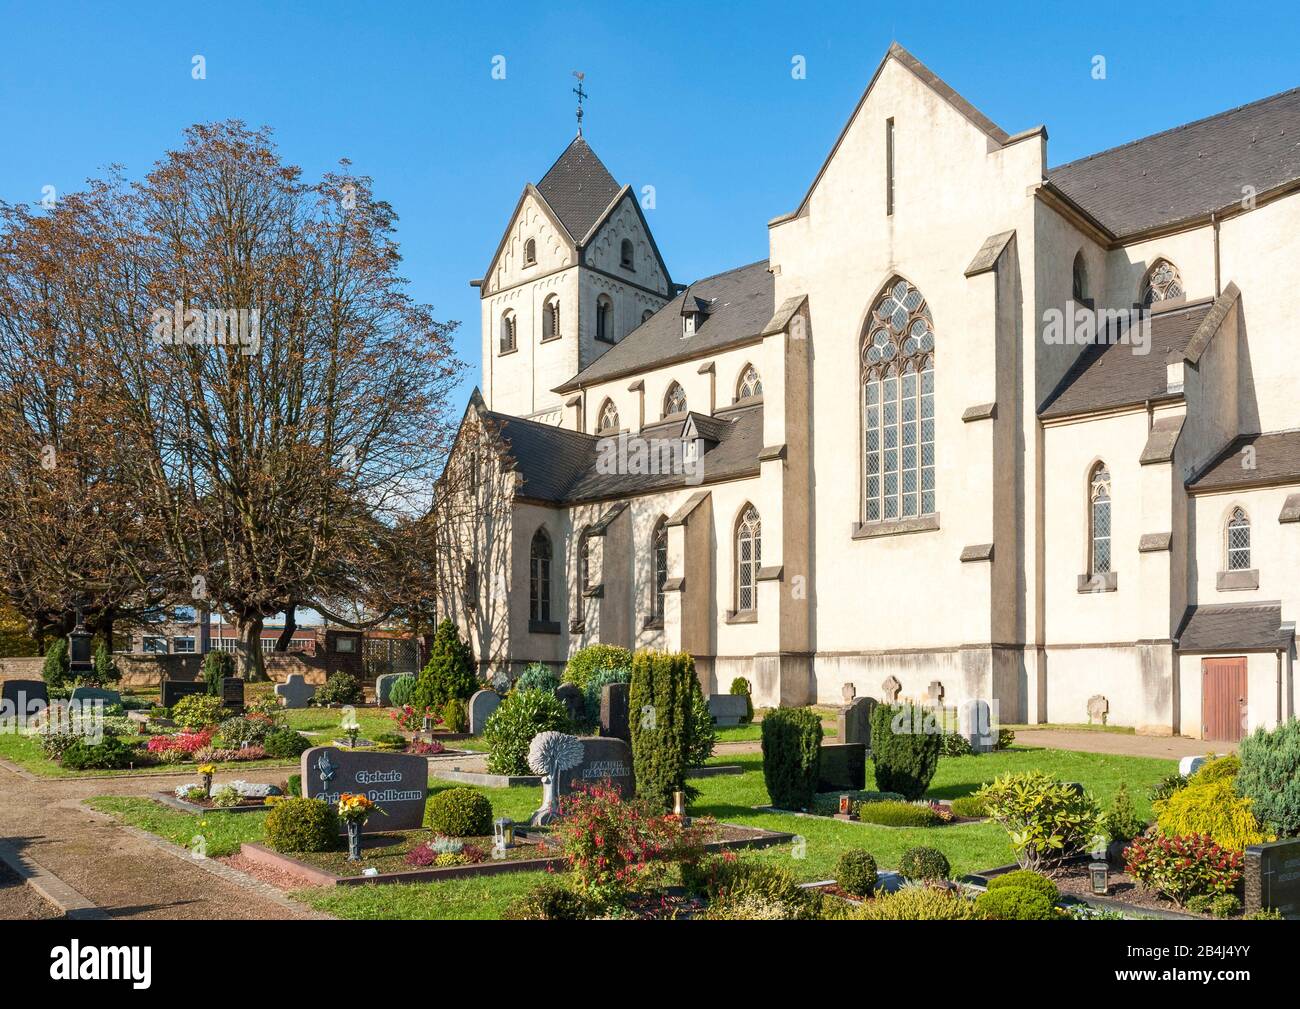 Alemania, Renania Del Norte-Westfalia, Krefeld - Hohenbudberg, Iglesia De San Matías. En 1852-1854 la iglesia fue reconstruida según los planes de Vincenz Statz. La torre románica del siglo 12 ha sido preservada. Foto de stock